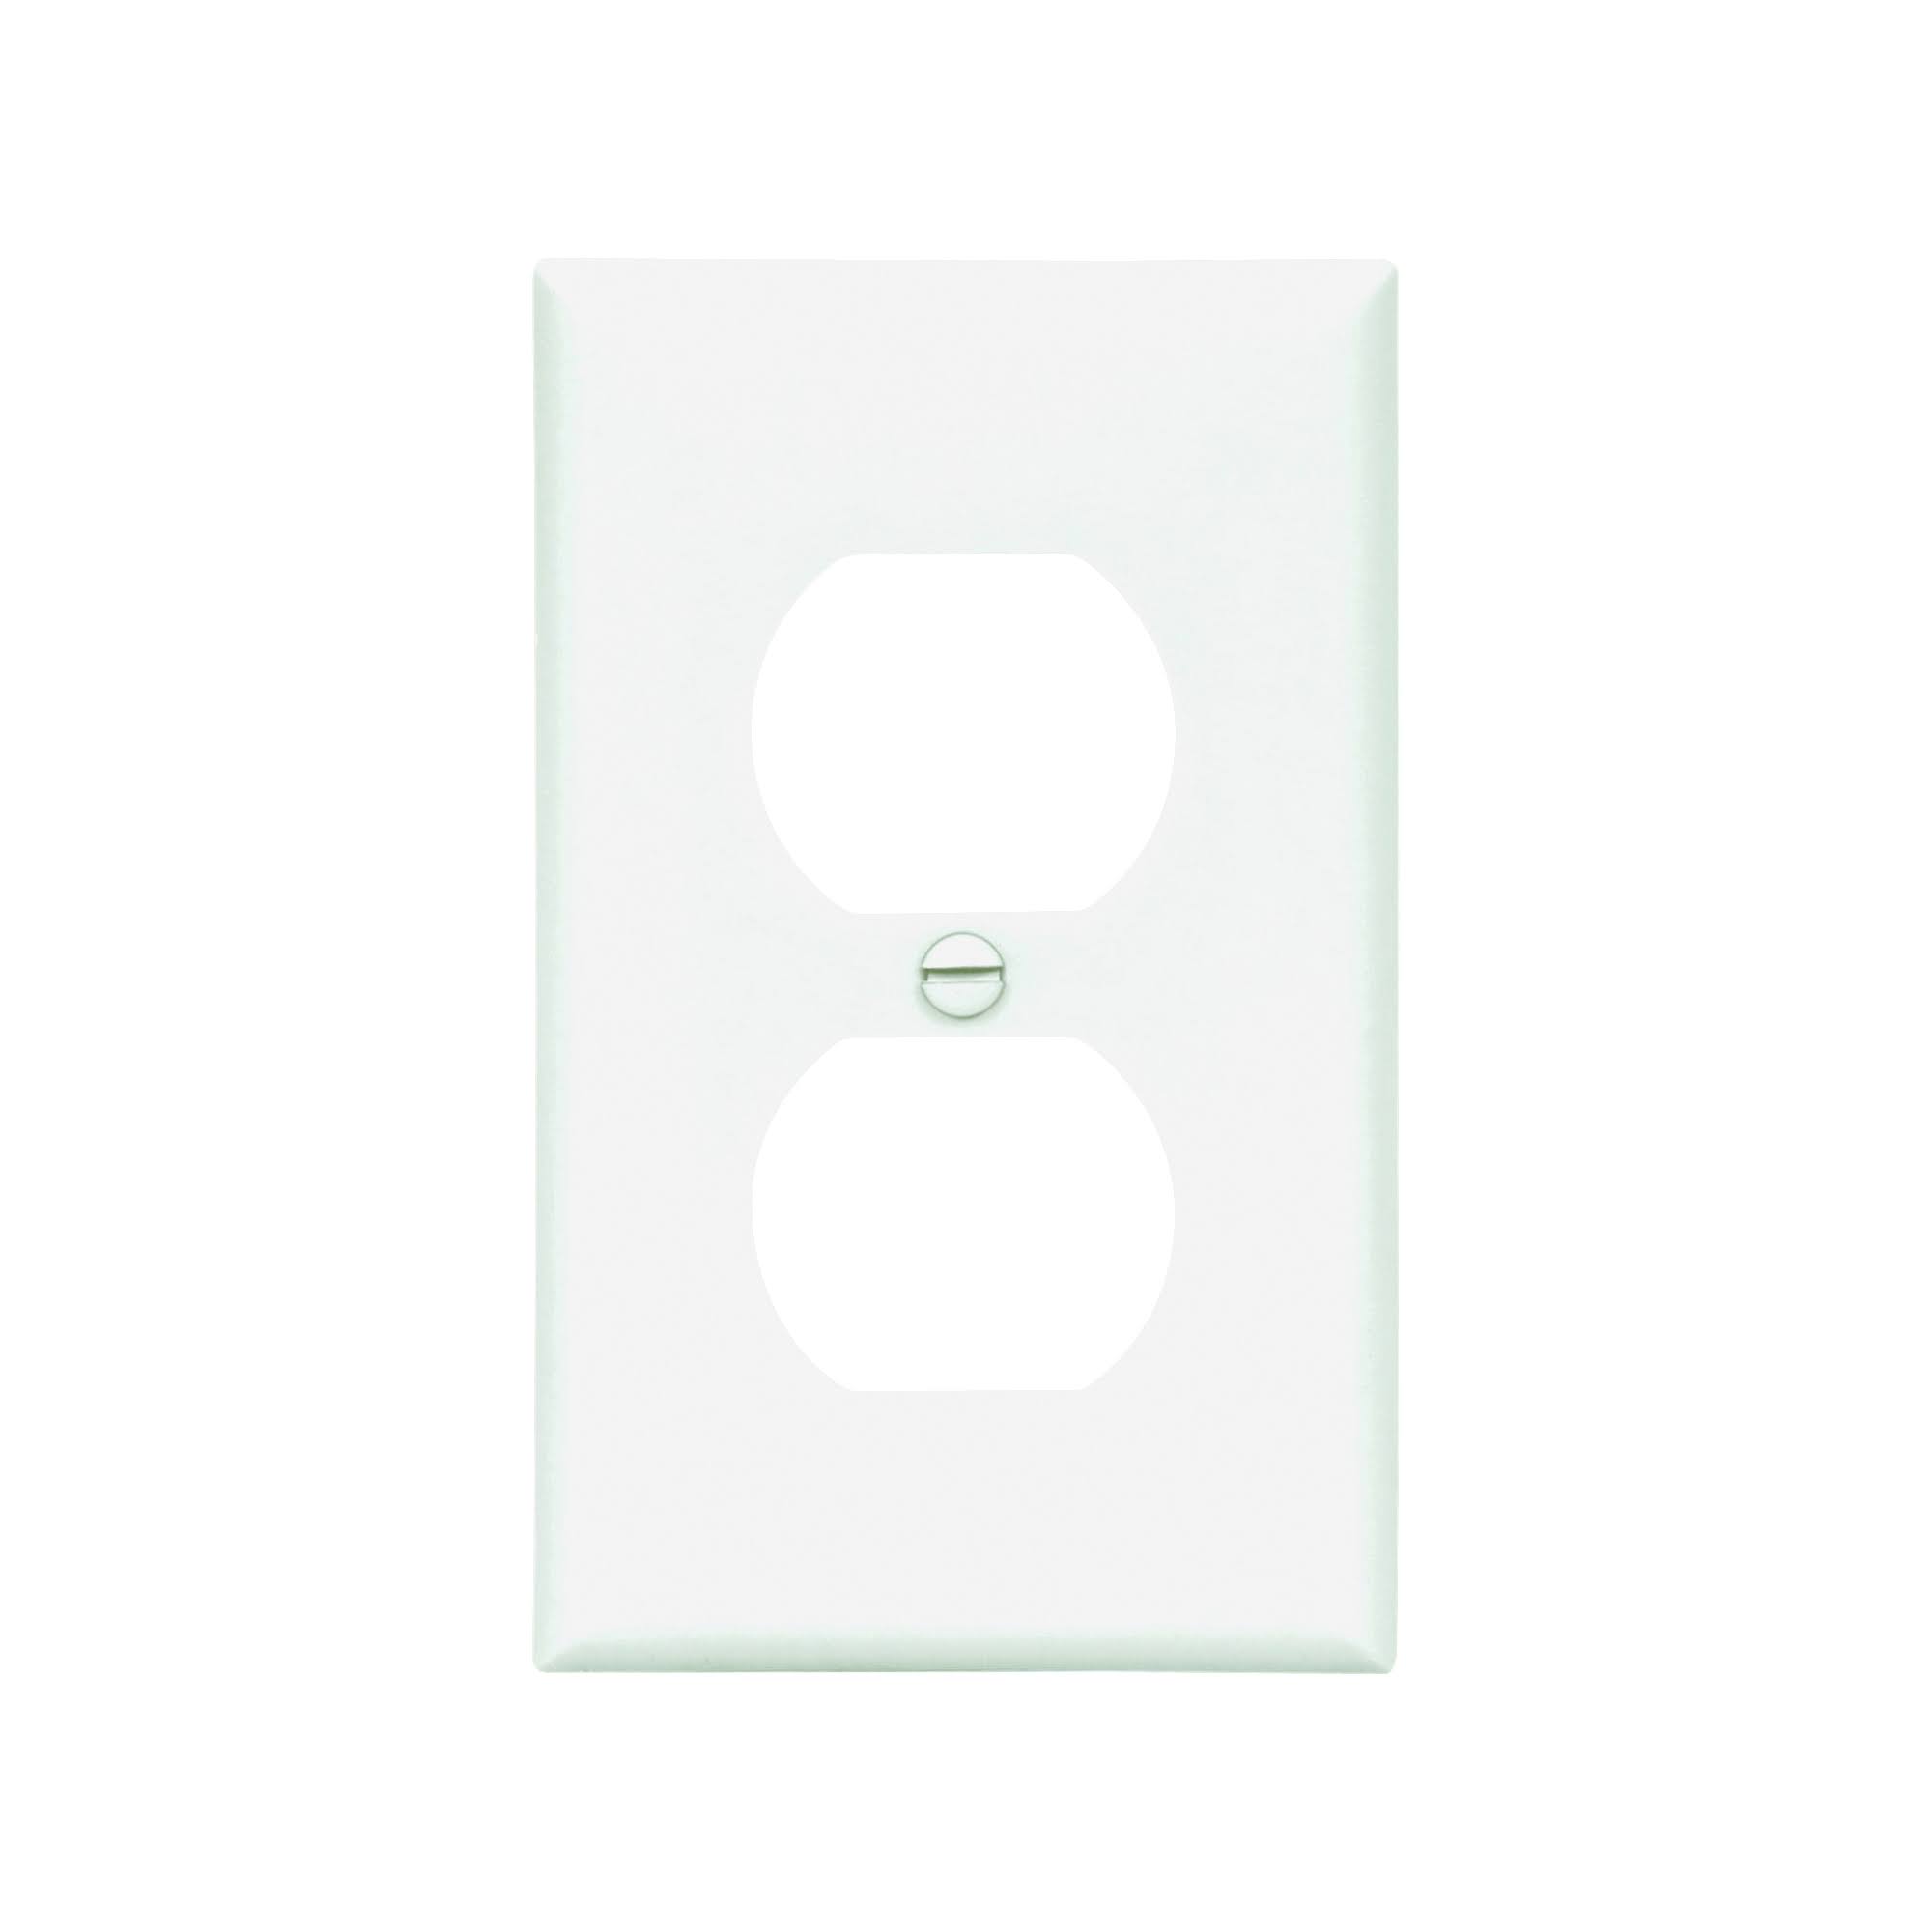 Eaton 5132W-L Nylon Standard Size Duplex Receptacle Wall Plate - White, 1 Gang